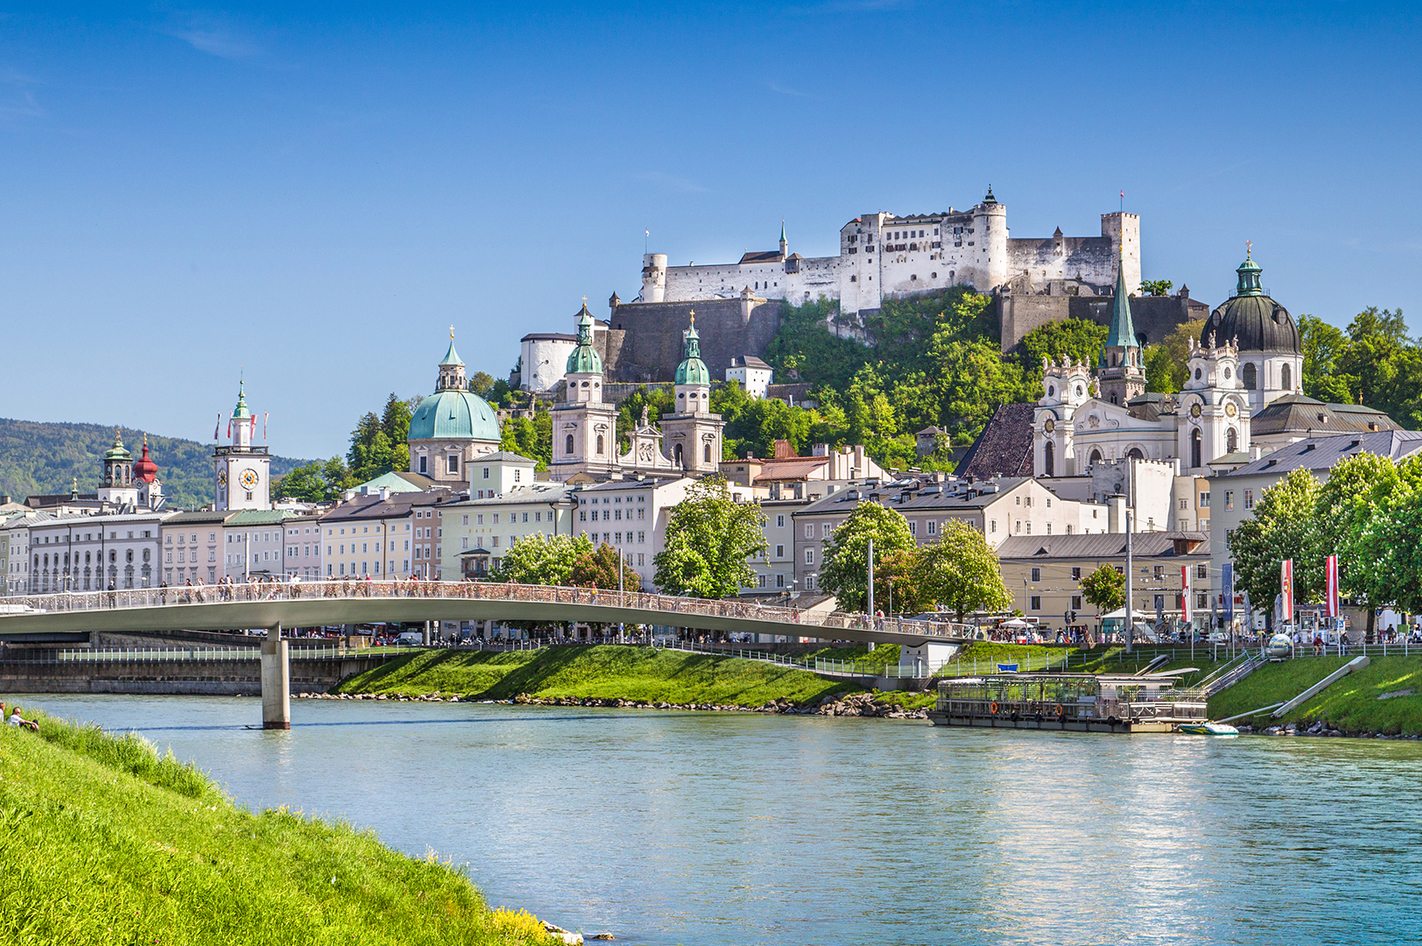 Städtereise Salzburg für 2 (2 Nächte)